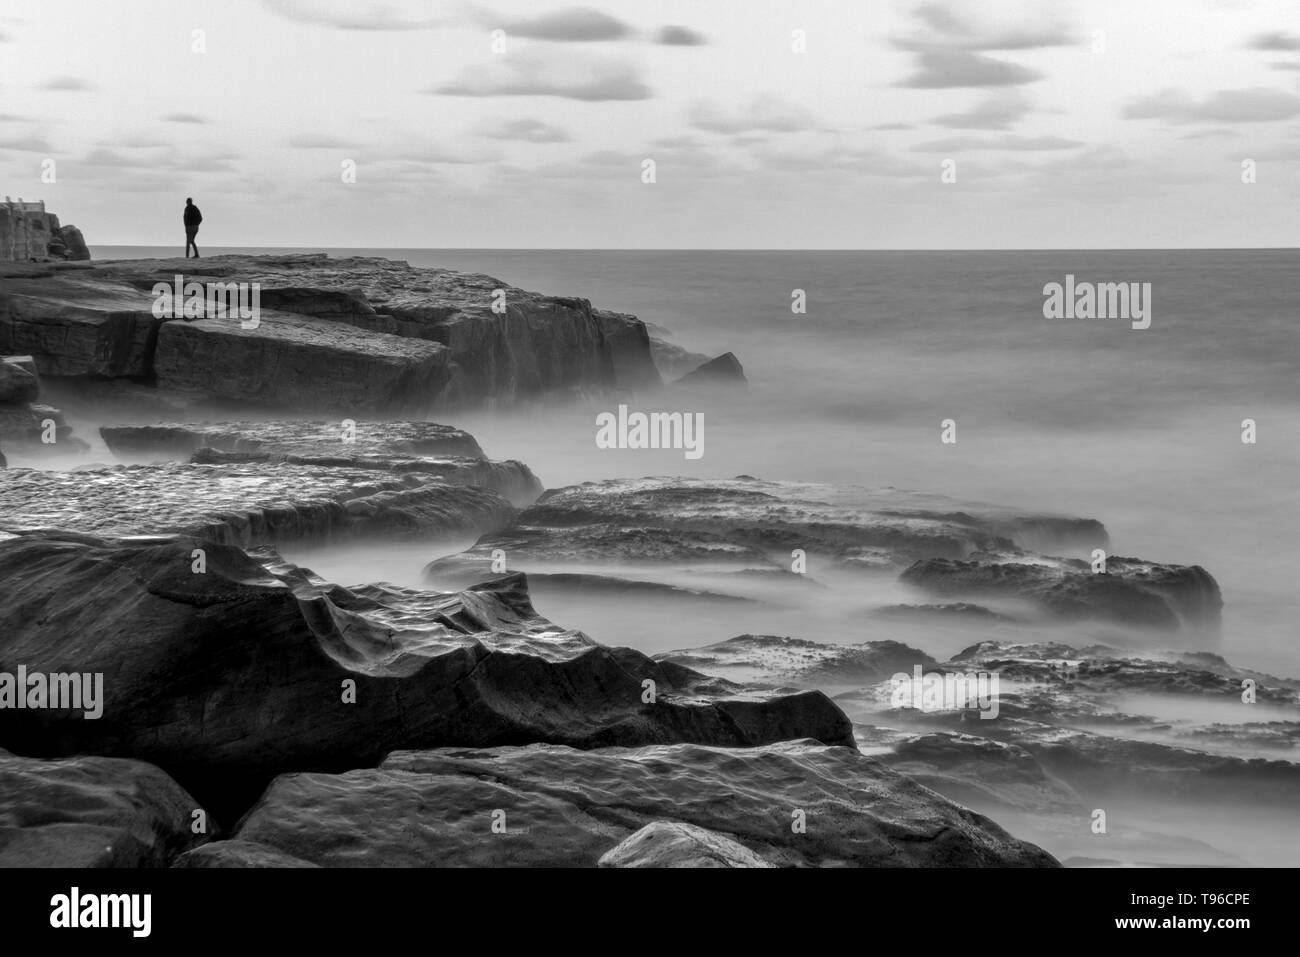 Lone uomo sulla roccia misty ocean shore Foto Stock